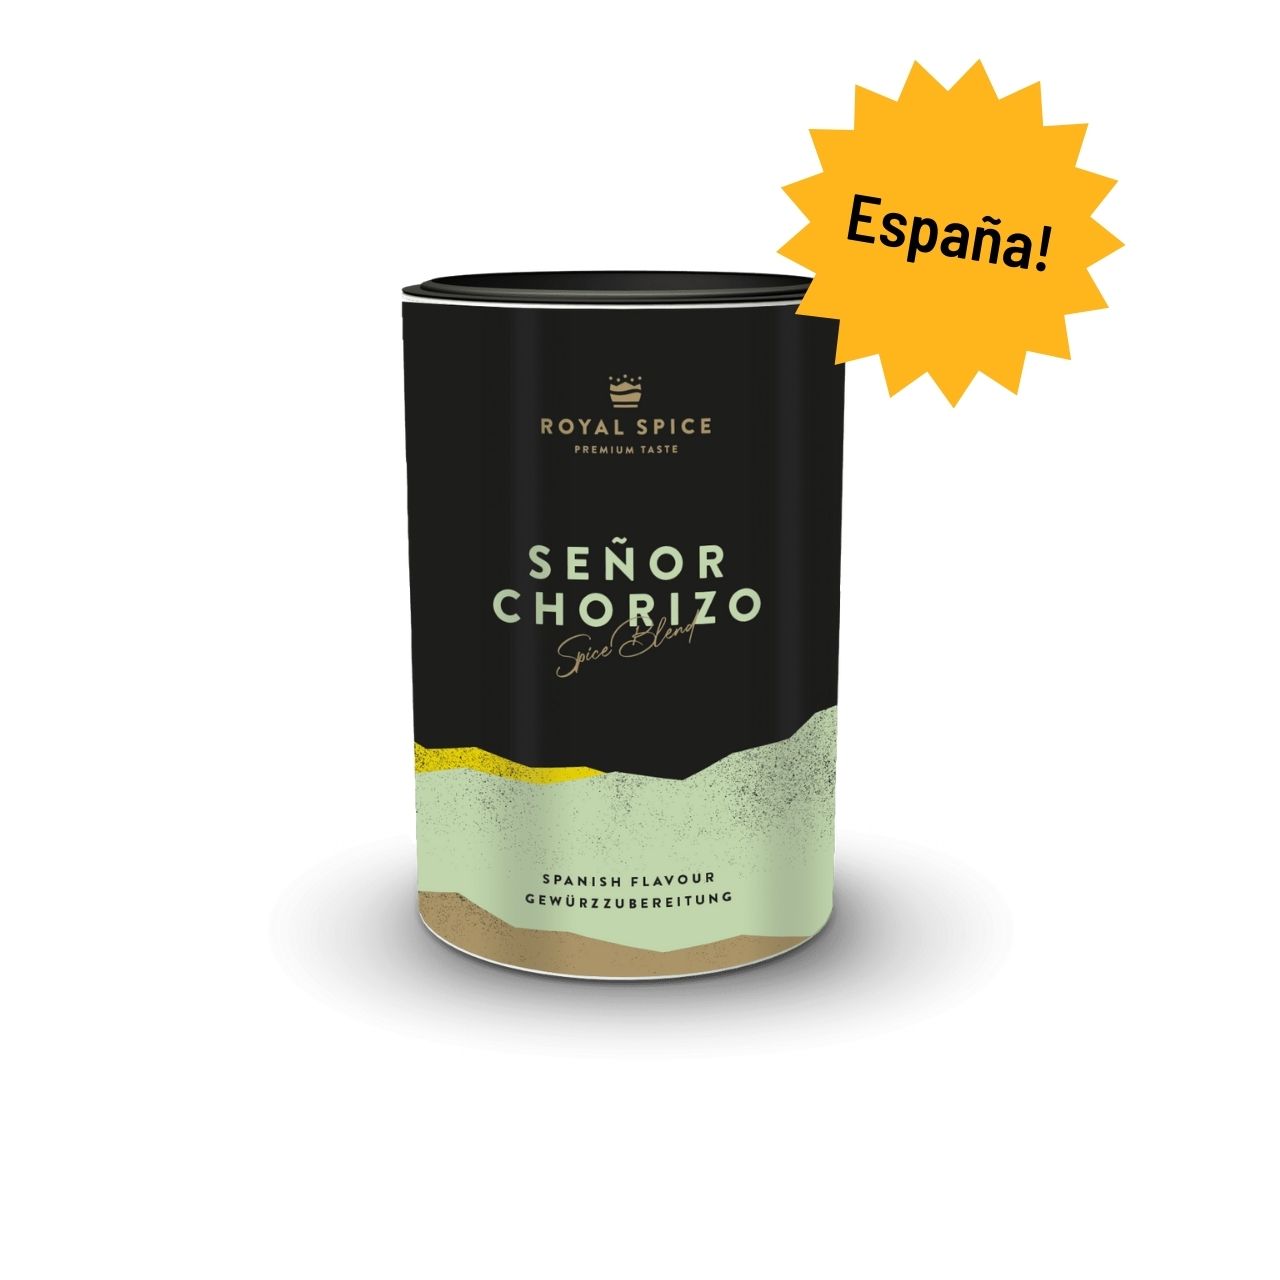 Royal Spice - Senor Chorizo, 120 g